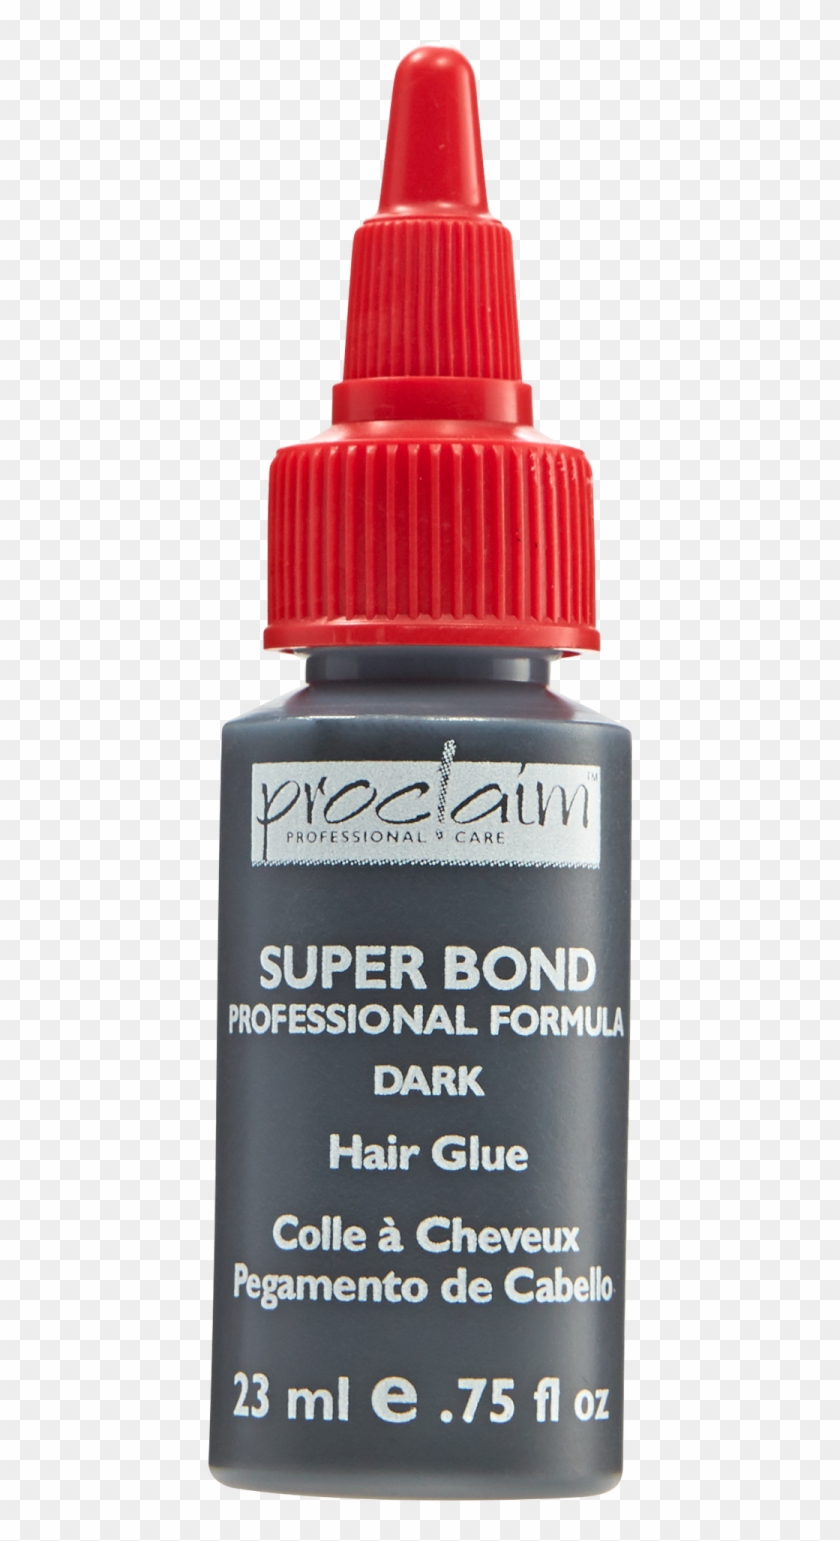 Extension Sallys - Hair Glue Clipart (#4072182) - PikPng